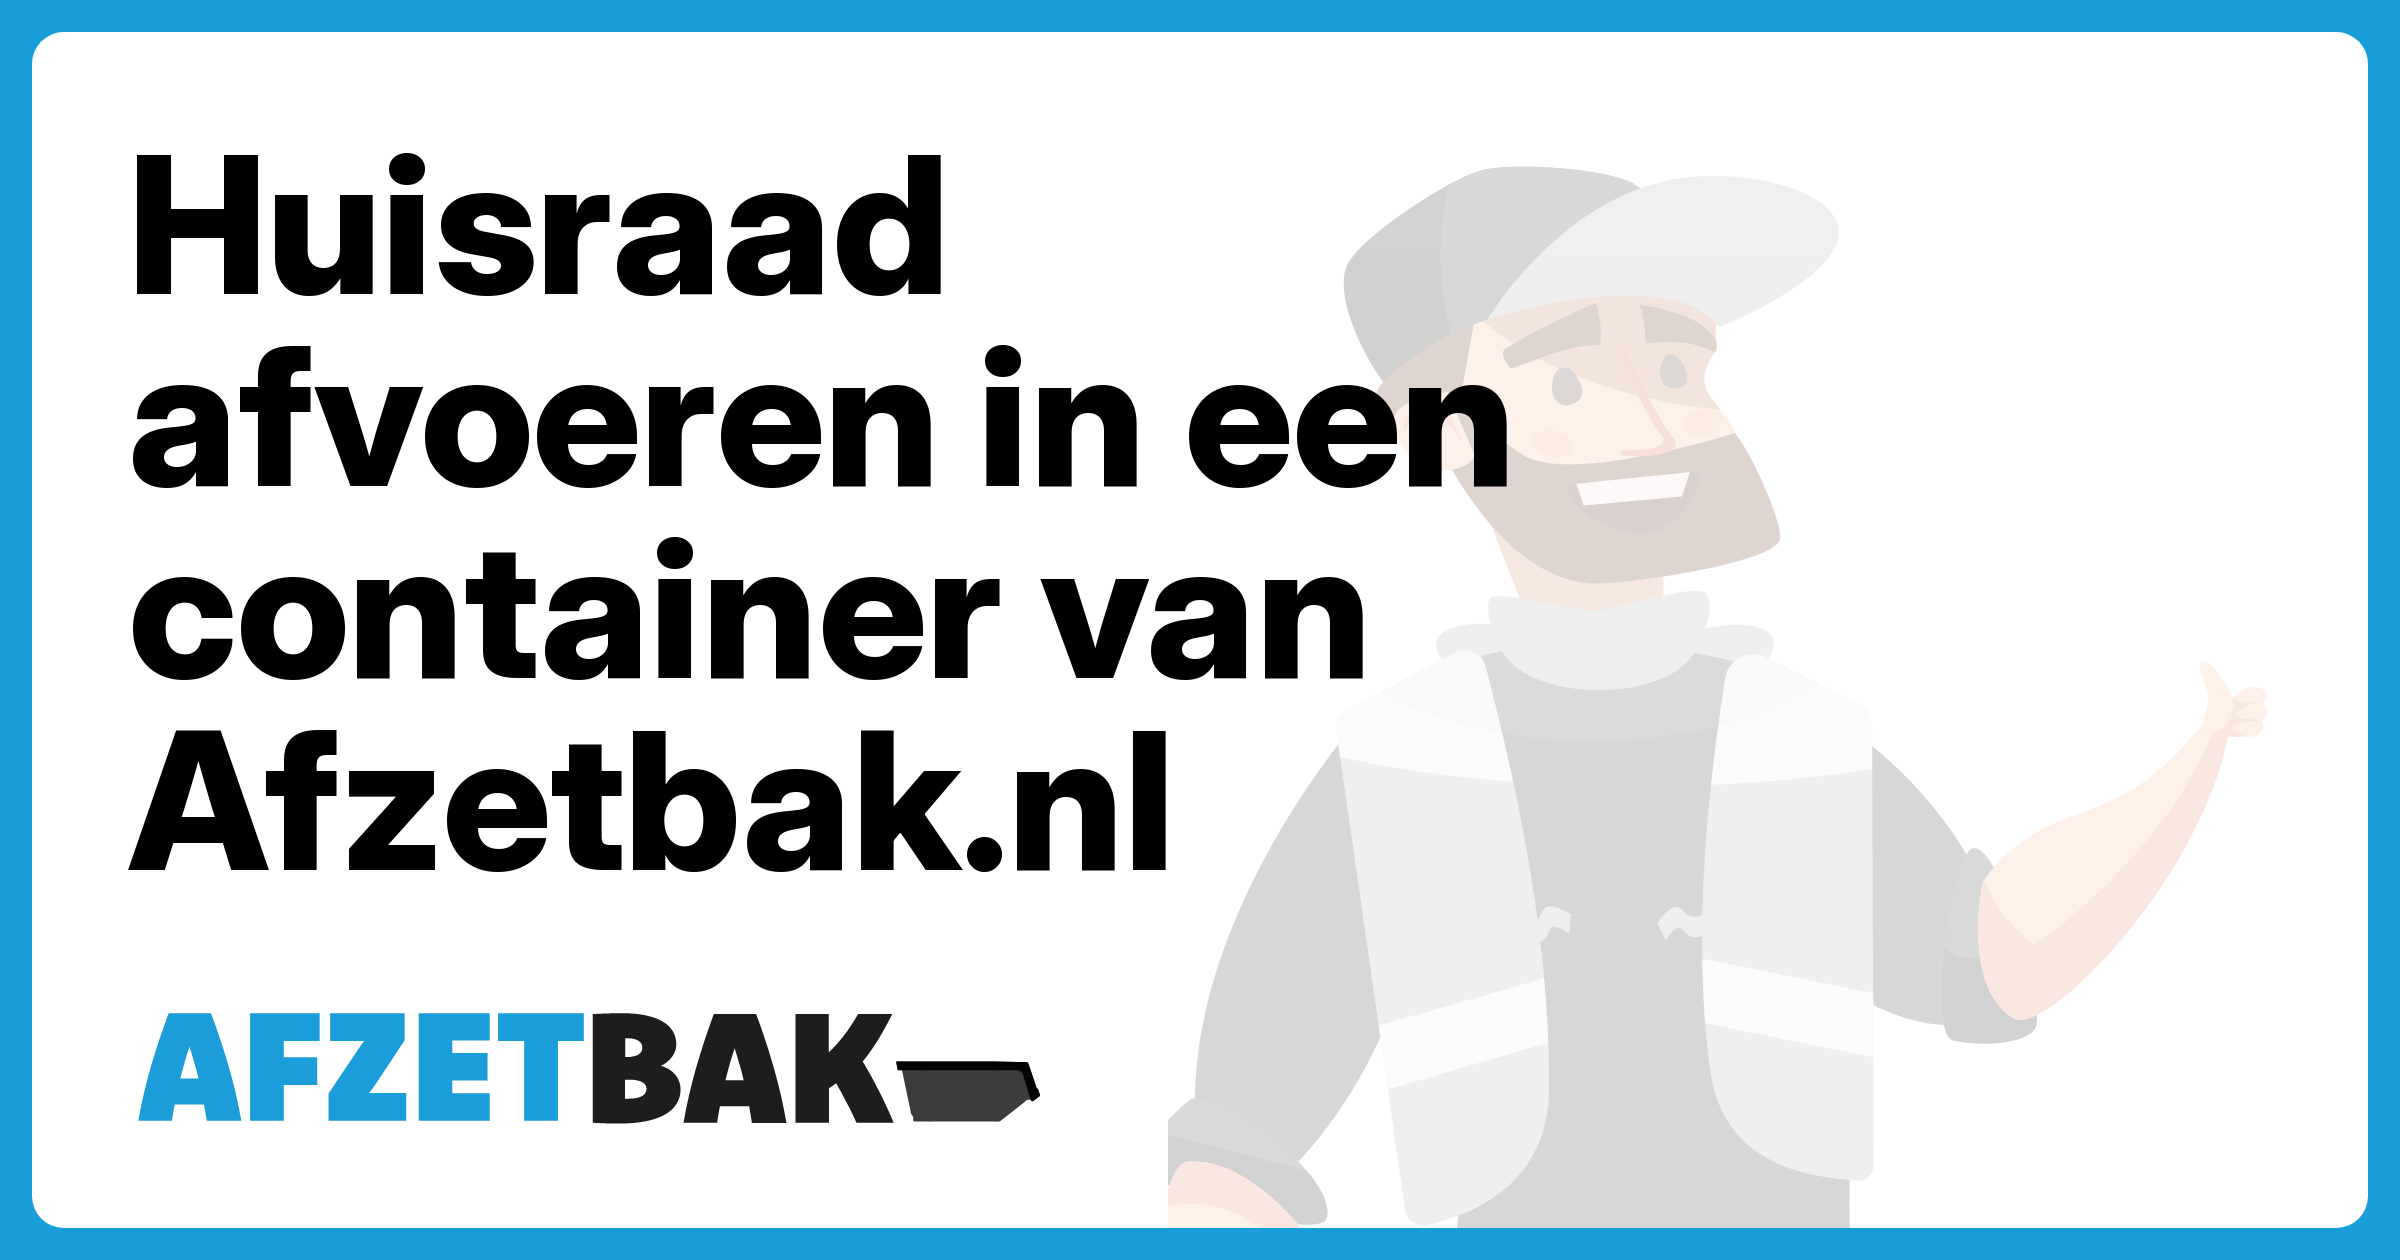 Huisraad afvoeren in een container van Afzetbak.nl - Afzetbak.nl